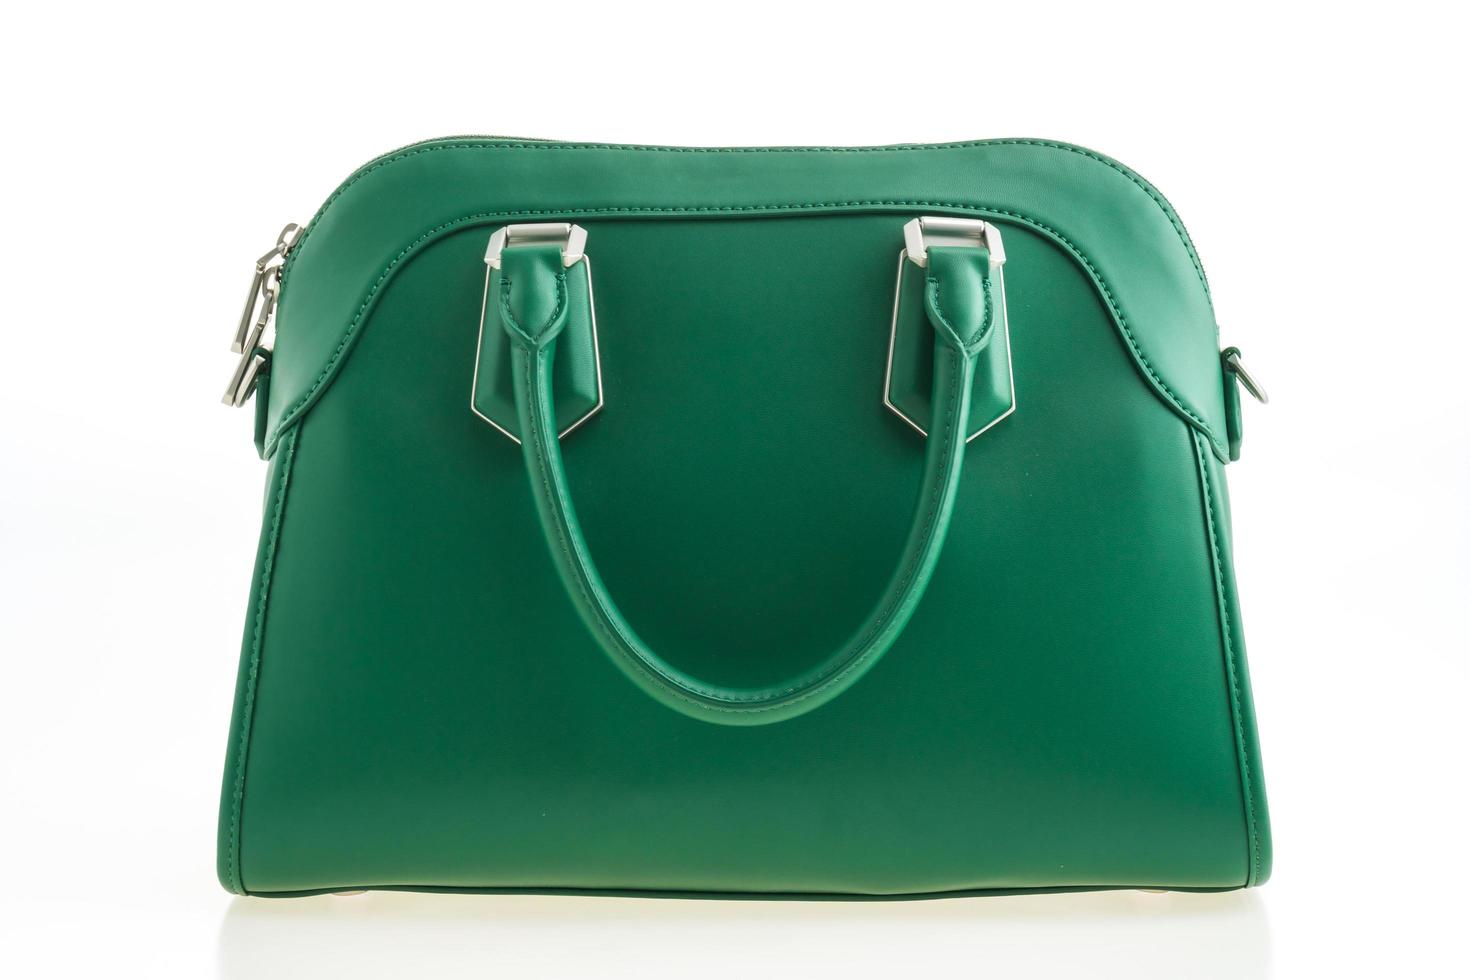 bella eleganza e borsetta verde moda di lusso foto